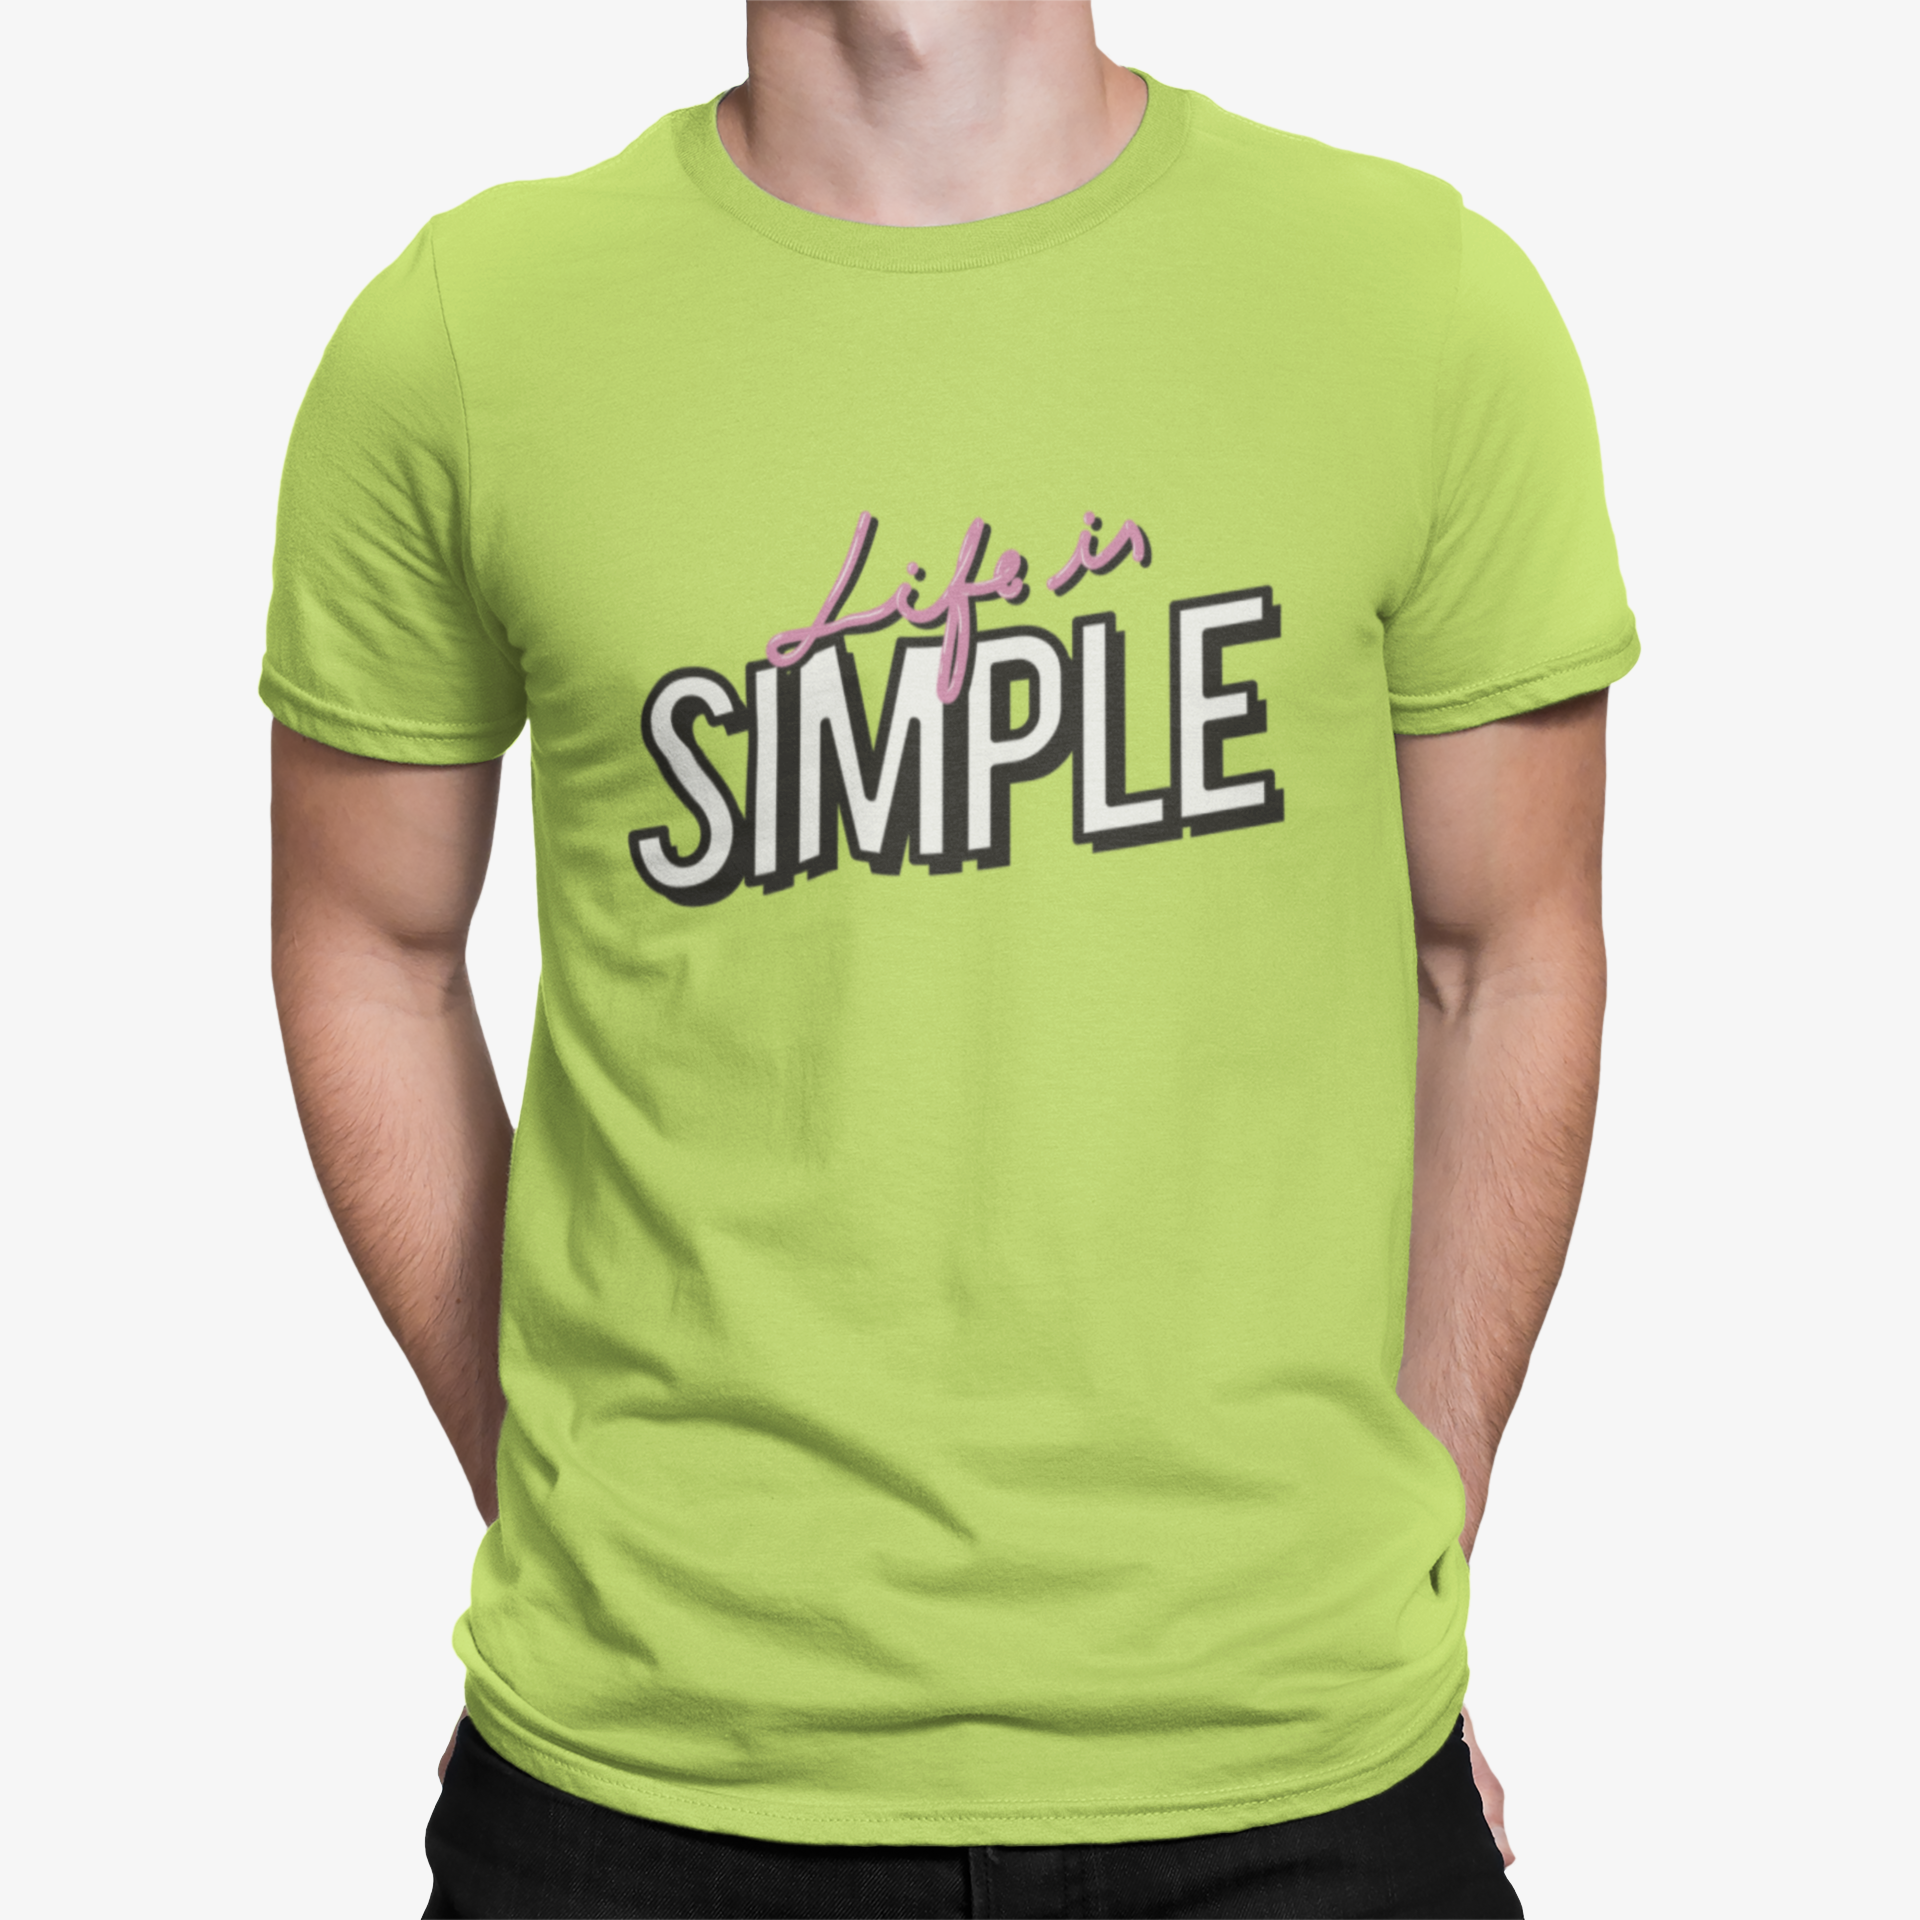 Camiseta Life is Simple